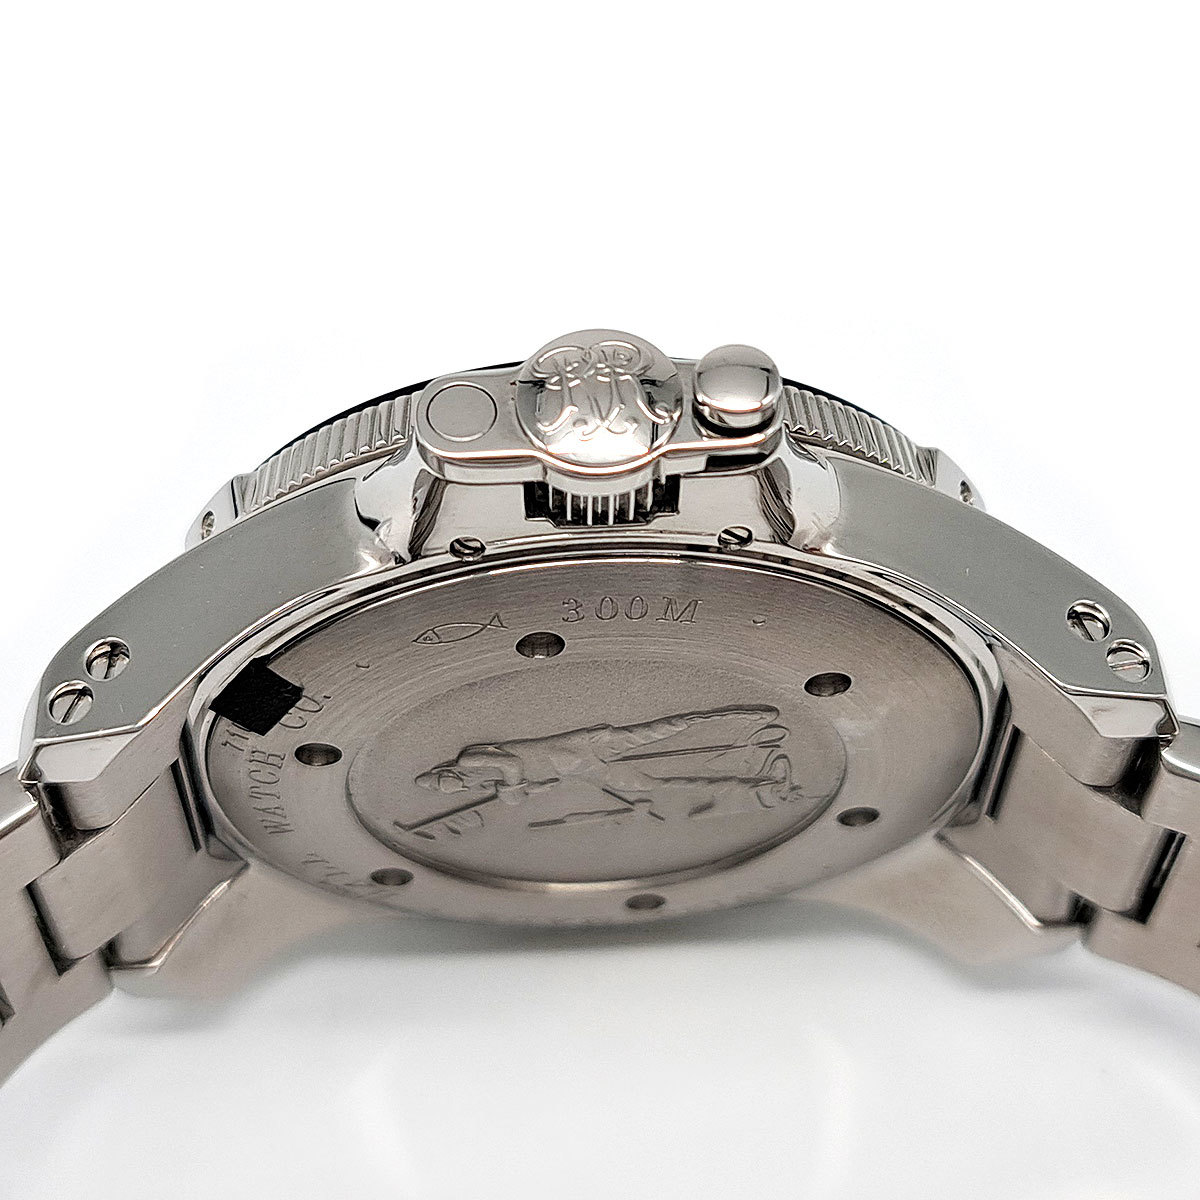  мяч  часы   ... ... карбон  DM2136A  автоматически  скручивание    нержавеющая сталь .../ керамический    мужской  BALLWATCH  подержанный товар  【 часы 】